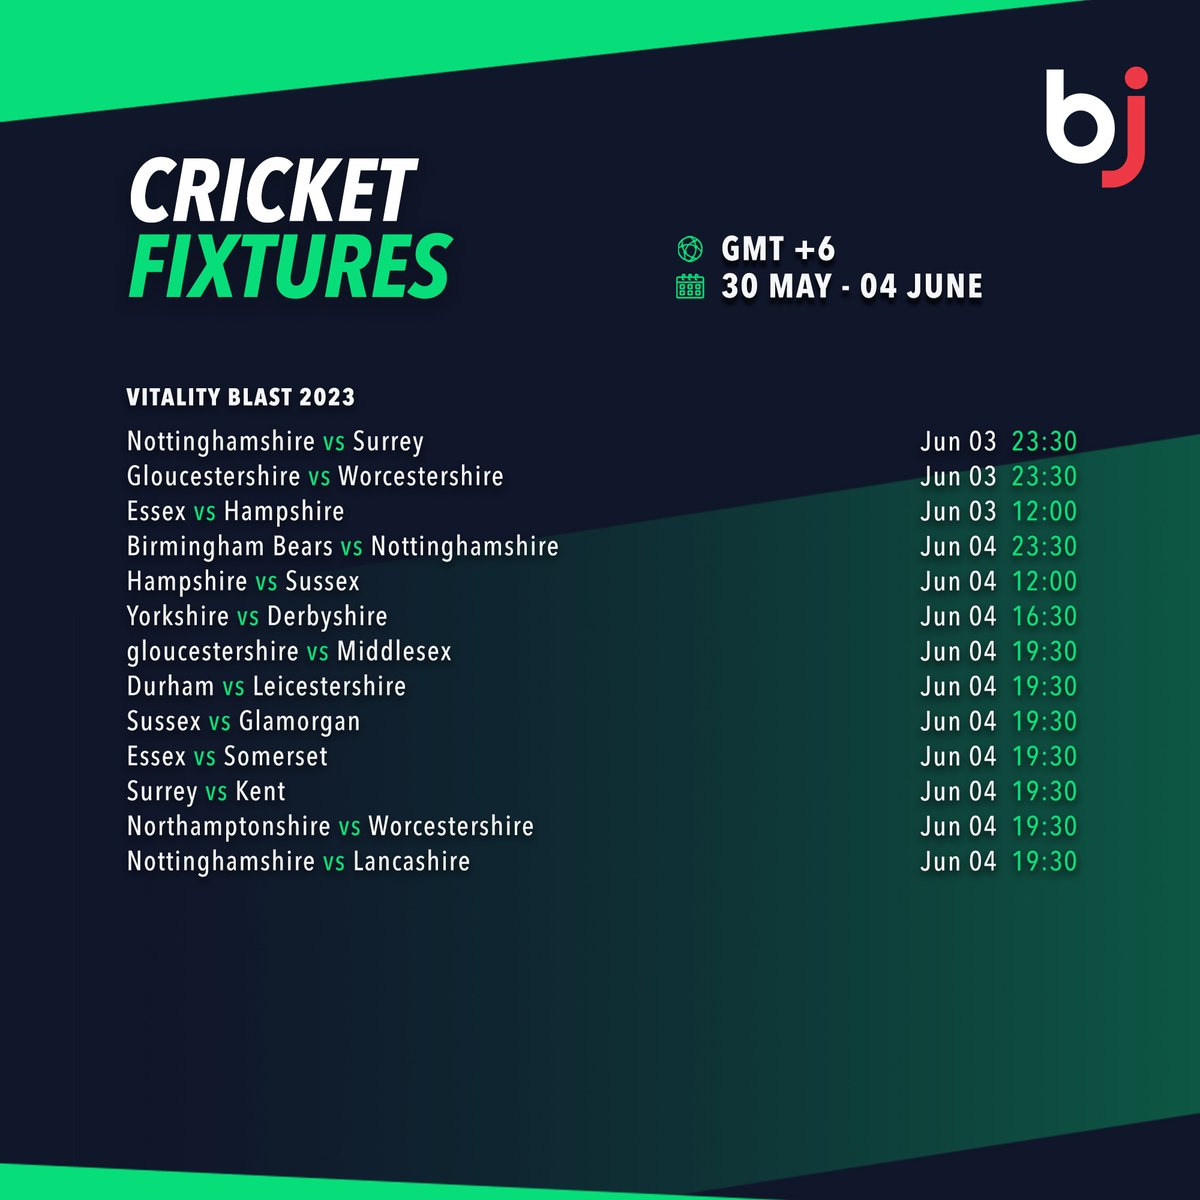 এক পলকে দেখে নিন আগামি সপ্তাহের ভাইটালিটি ব্লাস্ট লিগ ম্যাচ এর সময়সূচী শুধুমাত্র Baji-তে

 💥এখনই  BjBaji5.com  এর সদস্য হিসাবে সাইন-আপ করুন!! 💥 

#Baji #BJ #Sports #Cricket #Schedule #CricketFixture #VitalityBlast